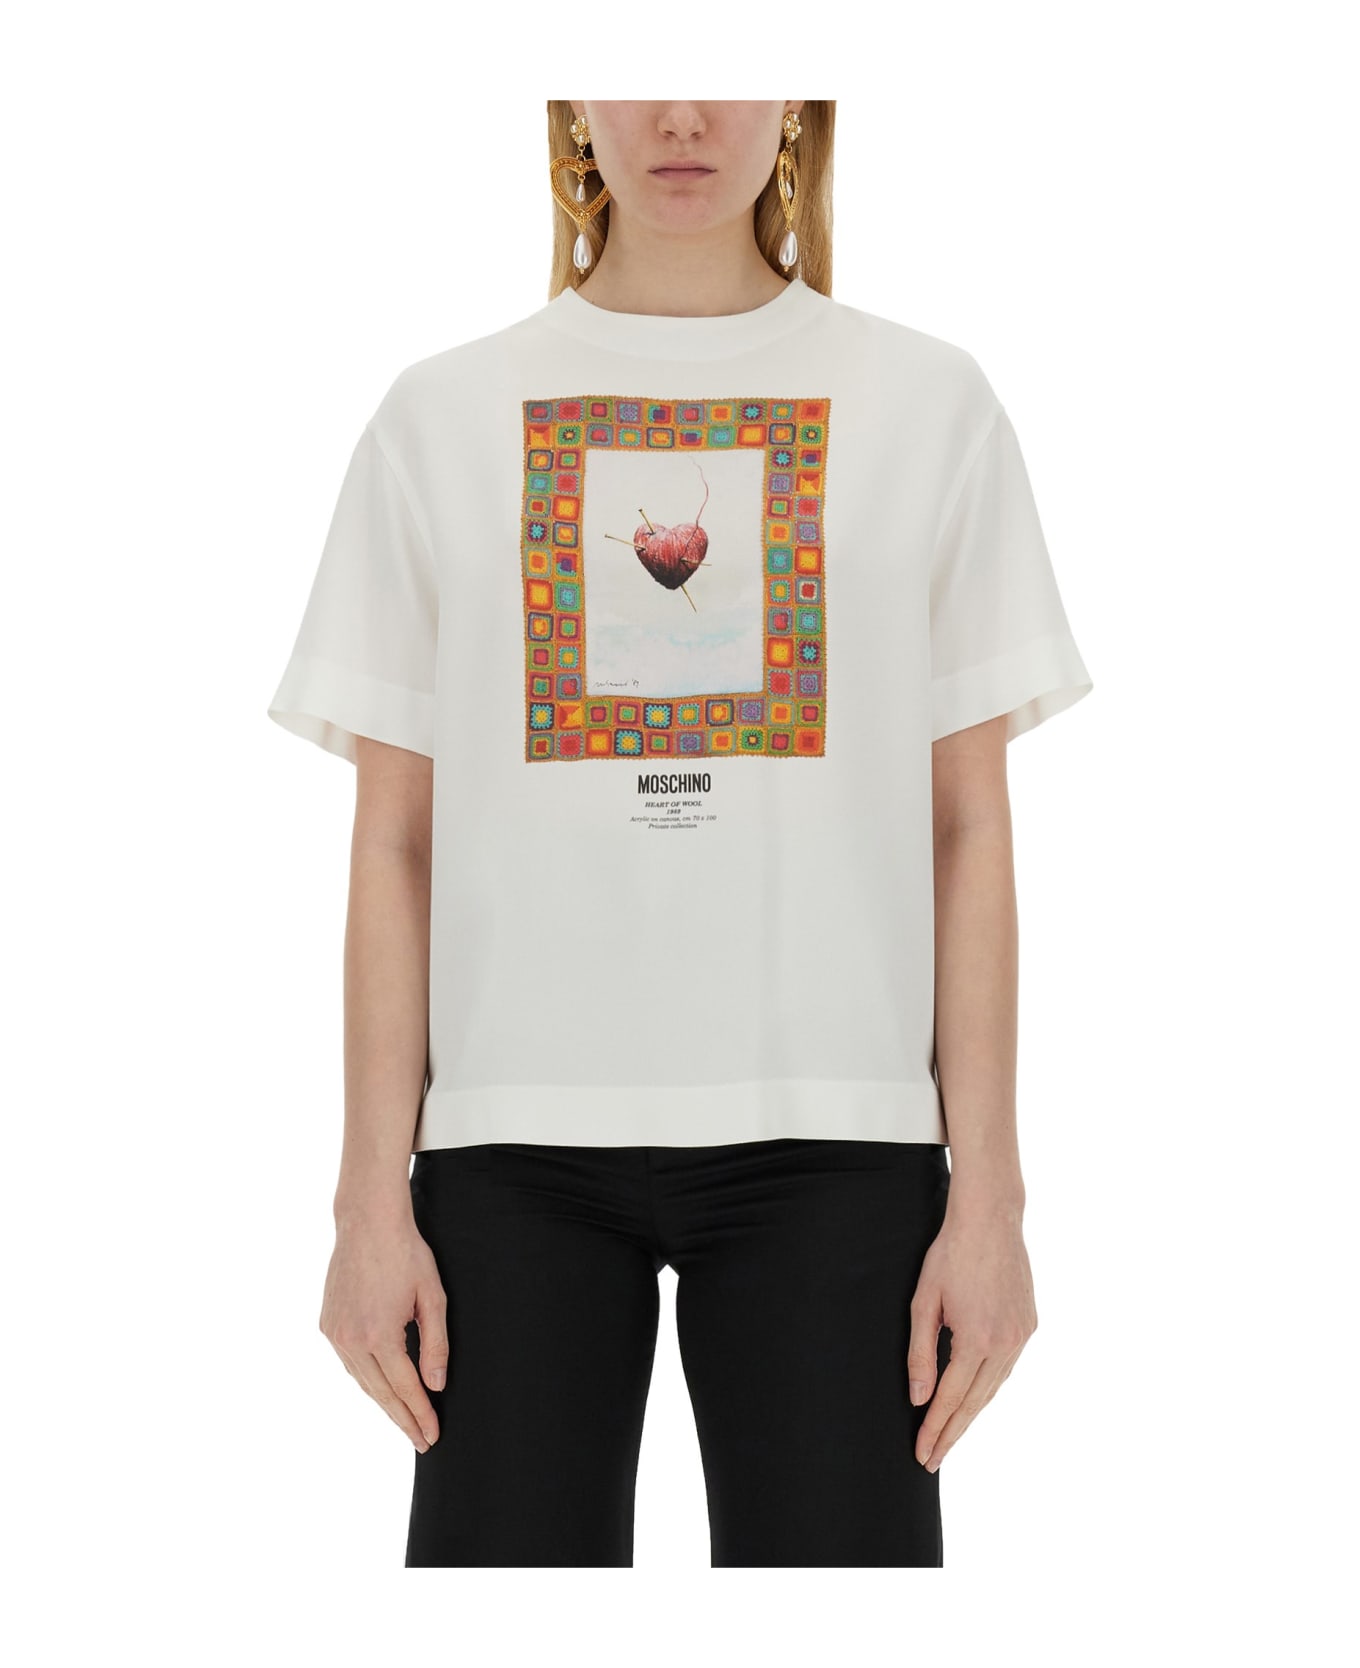 Moschino T-shirt 'heart' - White Tシャツ